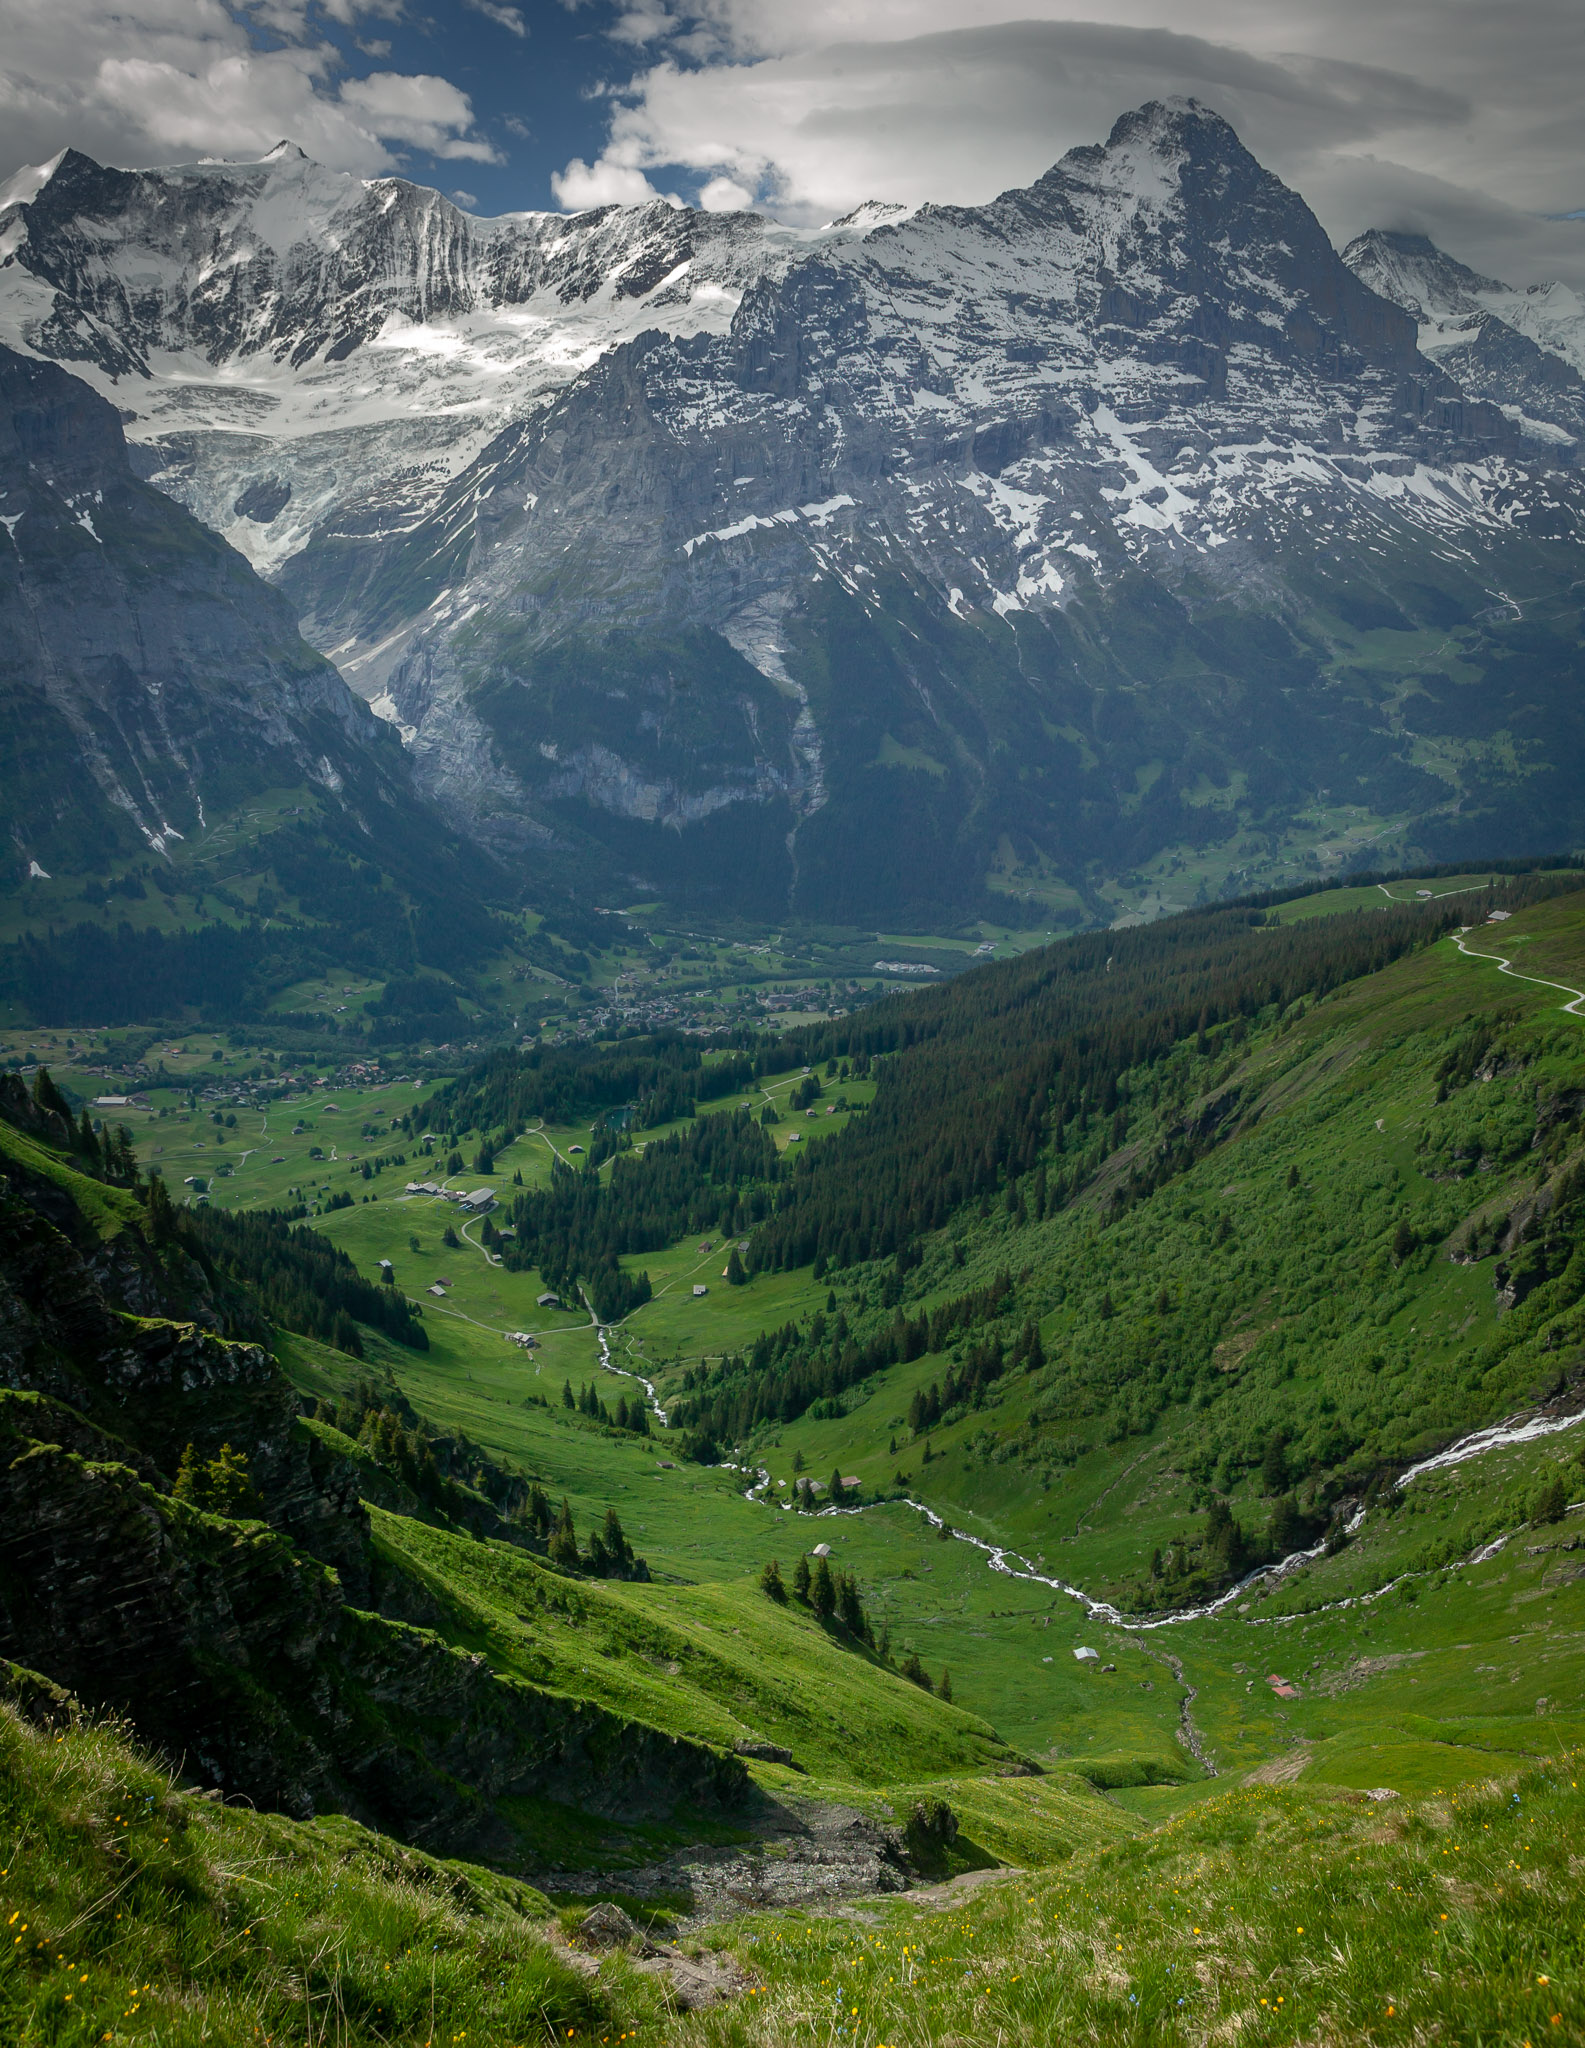 View of Schreckhorn & Eiger, with Grindelwald below